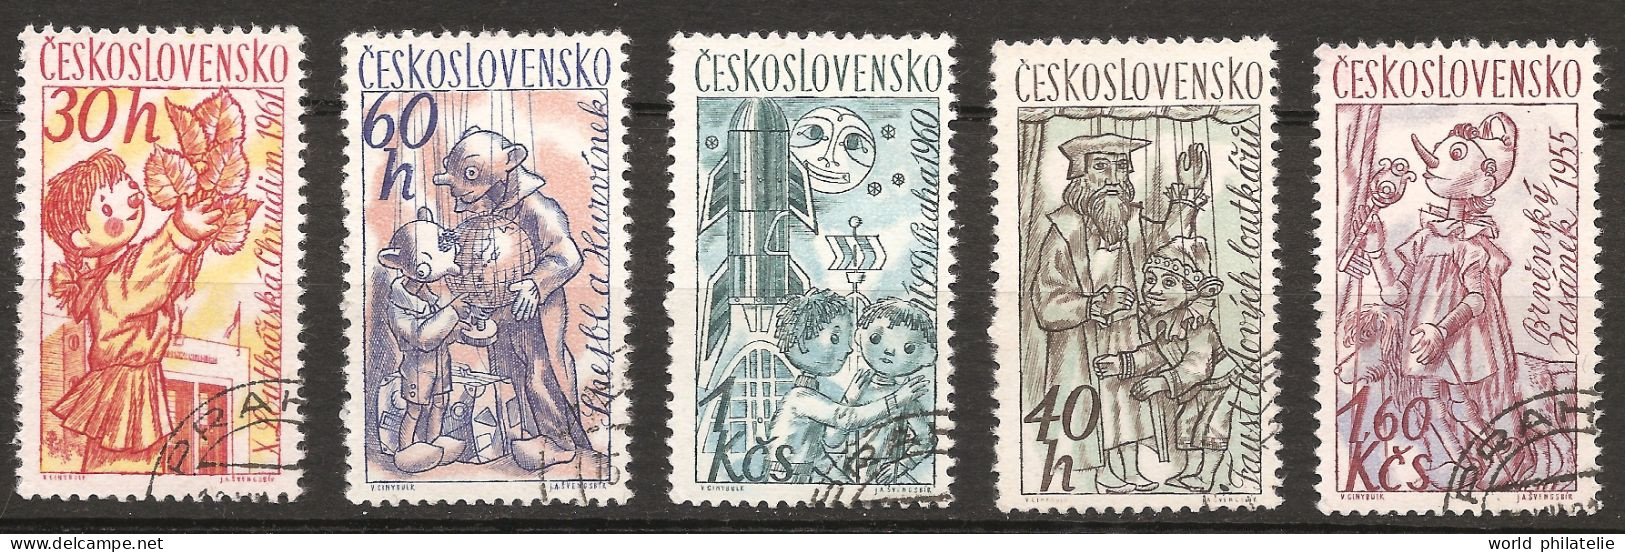 Tchécoslovaquie 1961 N° 1156 / 60 O Marionettes, Théâtre, Guignol, Pinocchio, Faust Et Gaspard, Lune, Fusée Jasanek Brno - Gebraucht